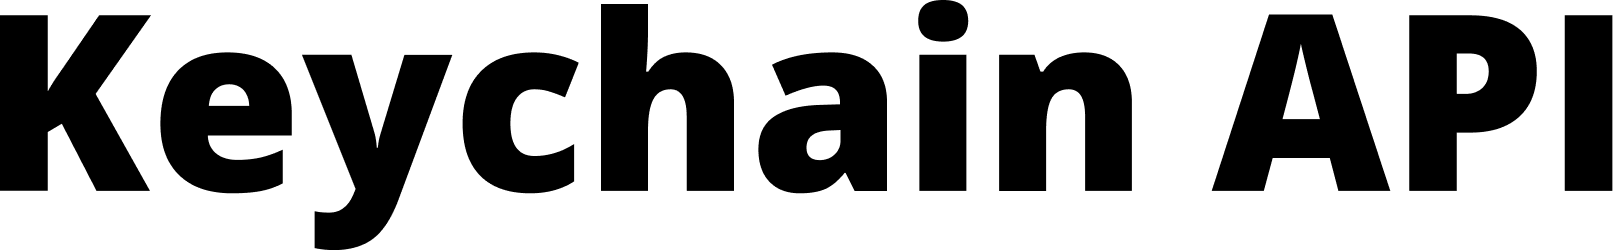 Keychain API logo